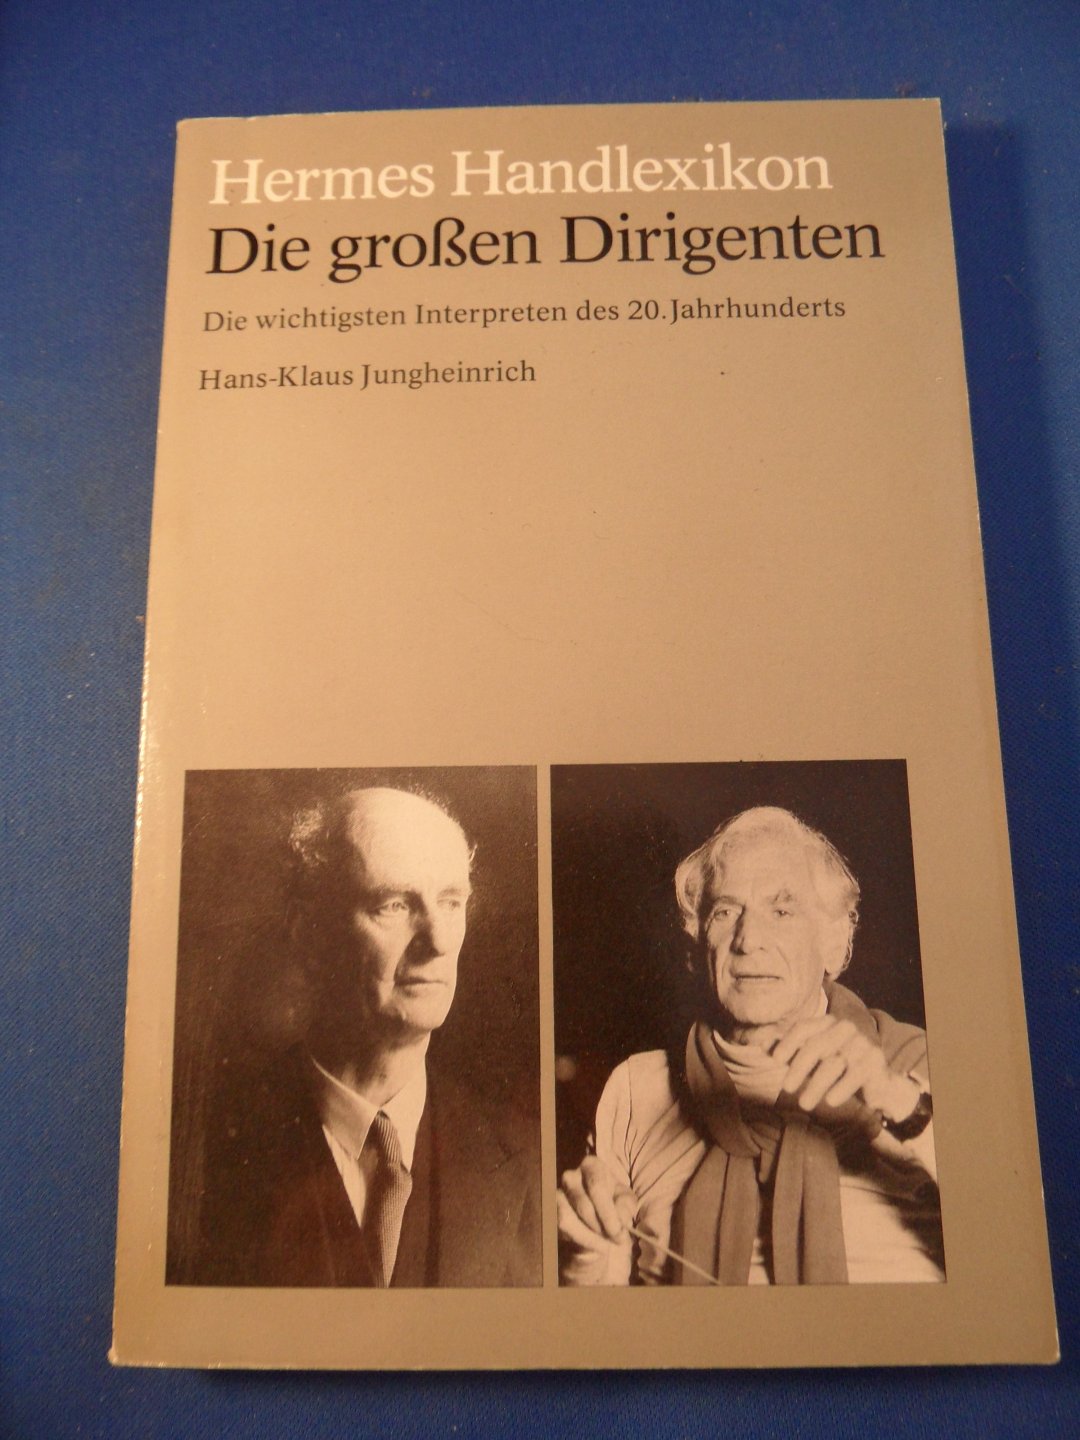 Jungheinrich, Hans-Klaus - Hermes Handlexikon. Die grossen Dirigenten. Die wichtigsten Interpreten des 20. Jahrhunderts